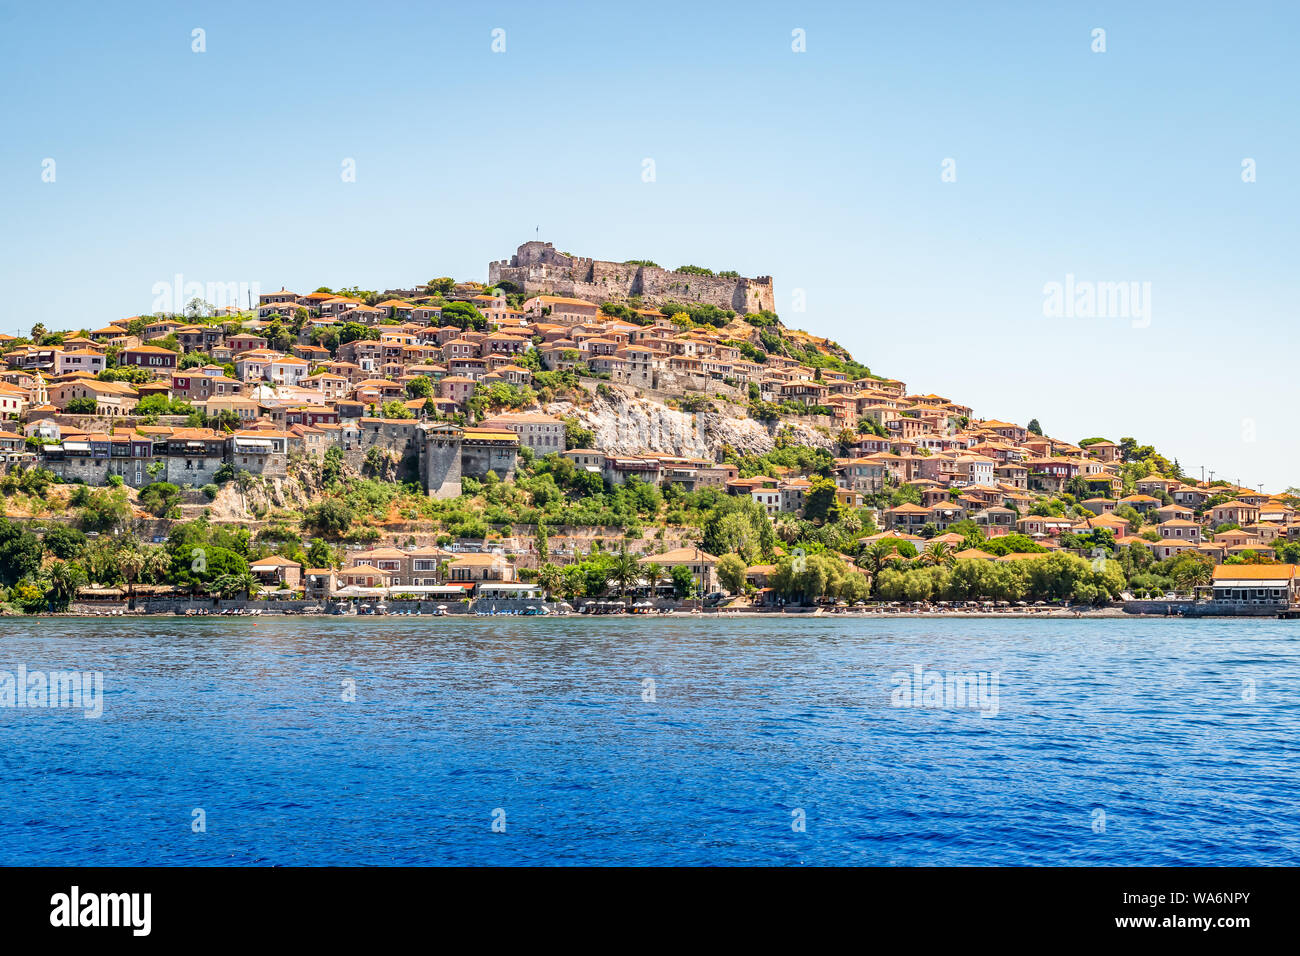 Mithymna ou Molyvos ville avec château médiéval, Lesbos (Mytilène), sur la mer Egée, en Grèce. Banque D'Images